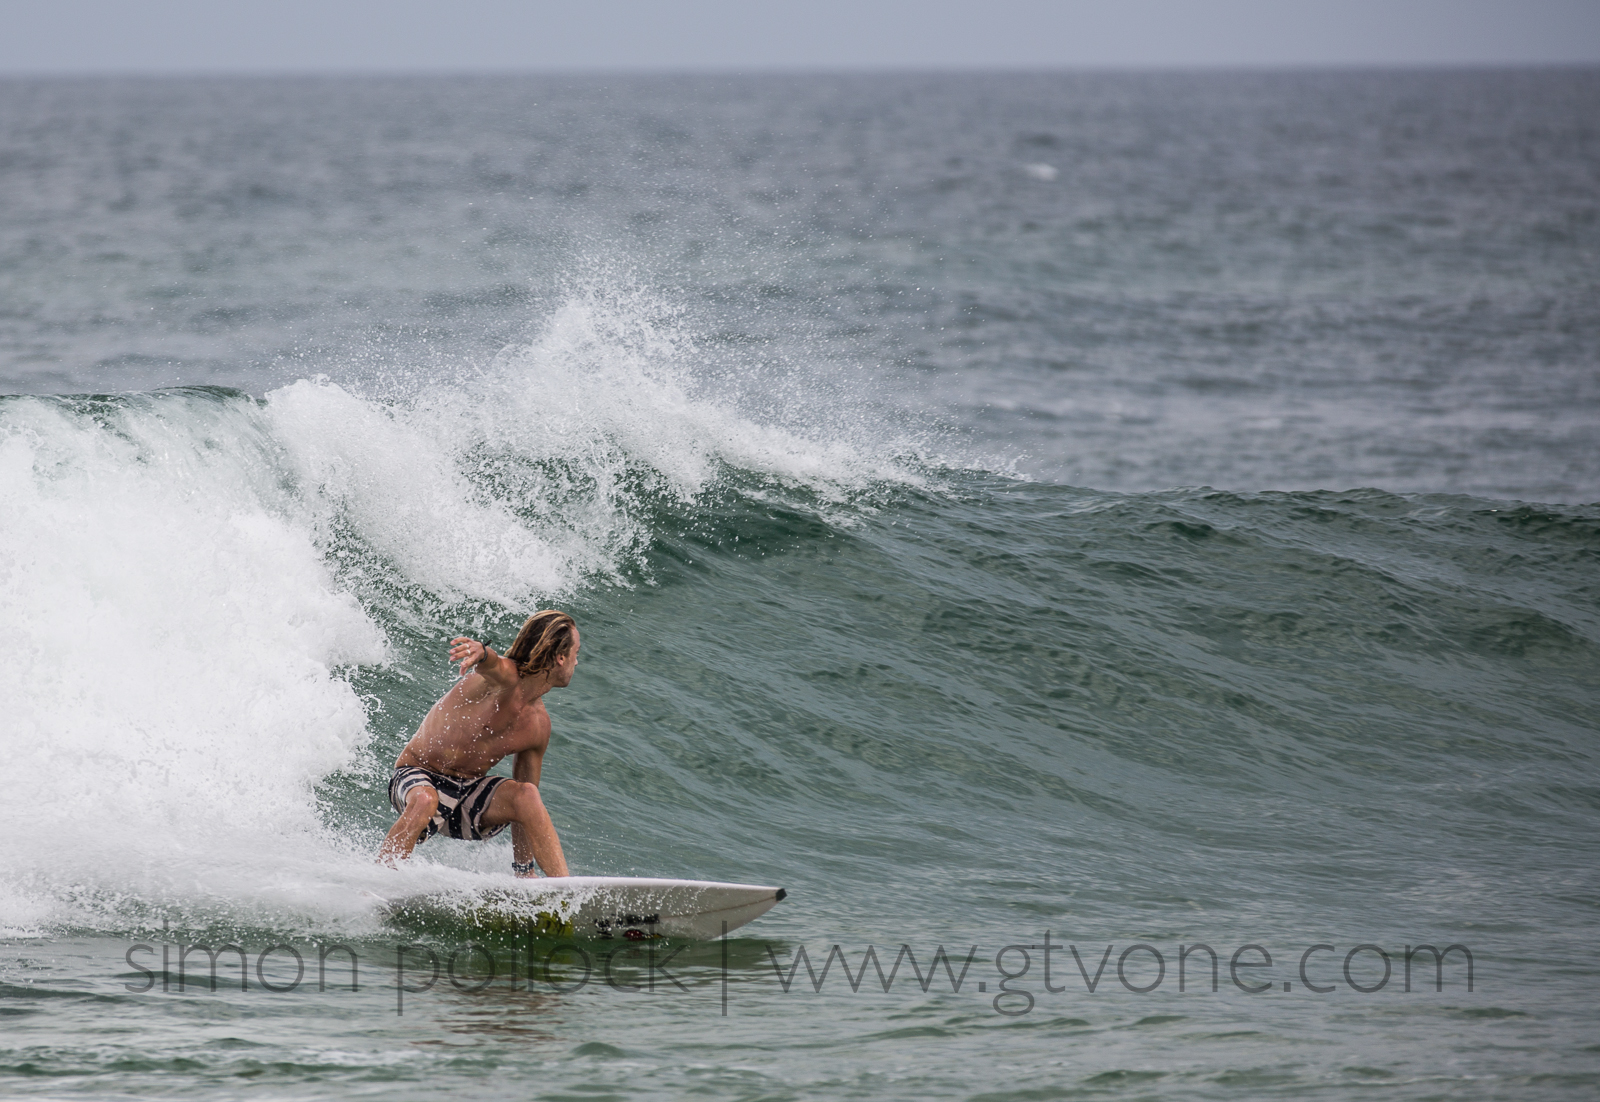 Mitch Pollard surfing Sawtell